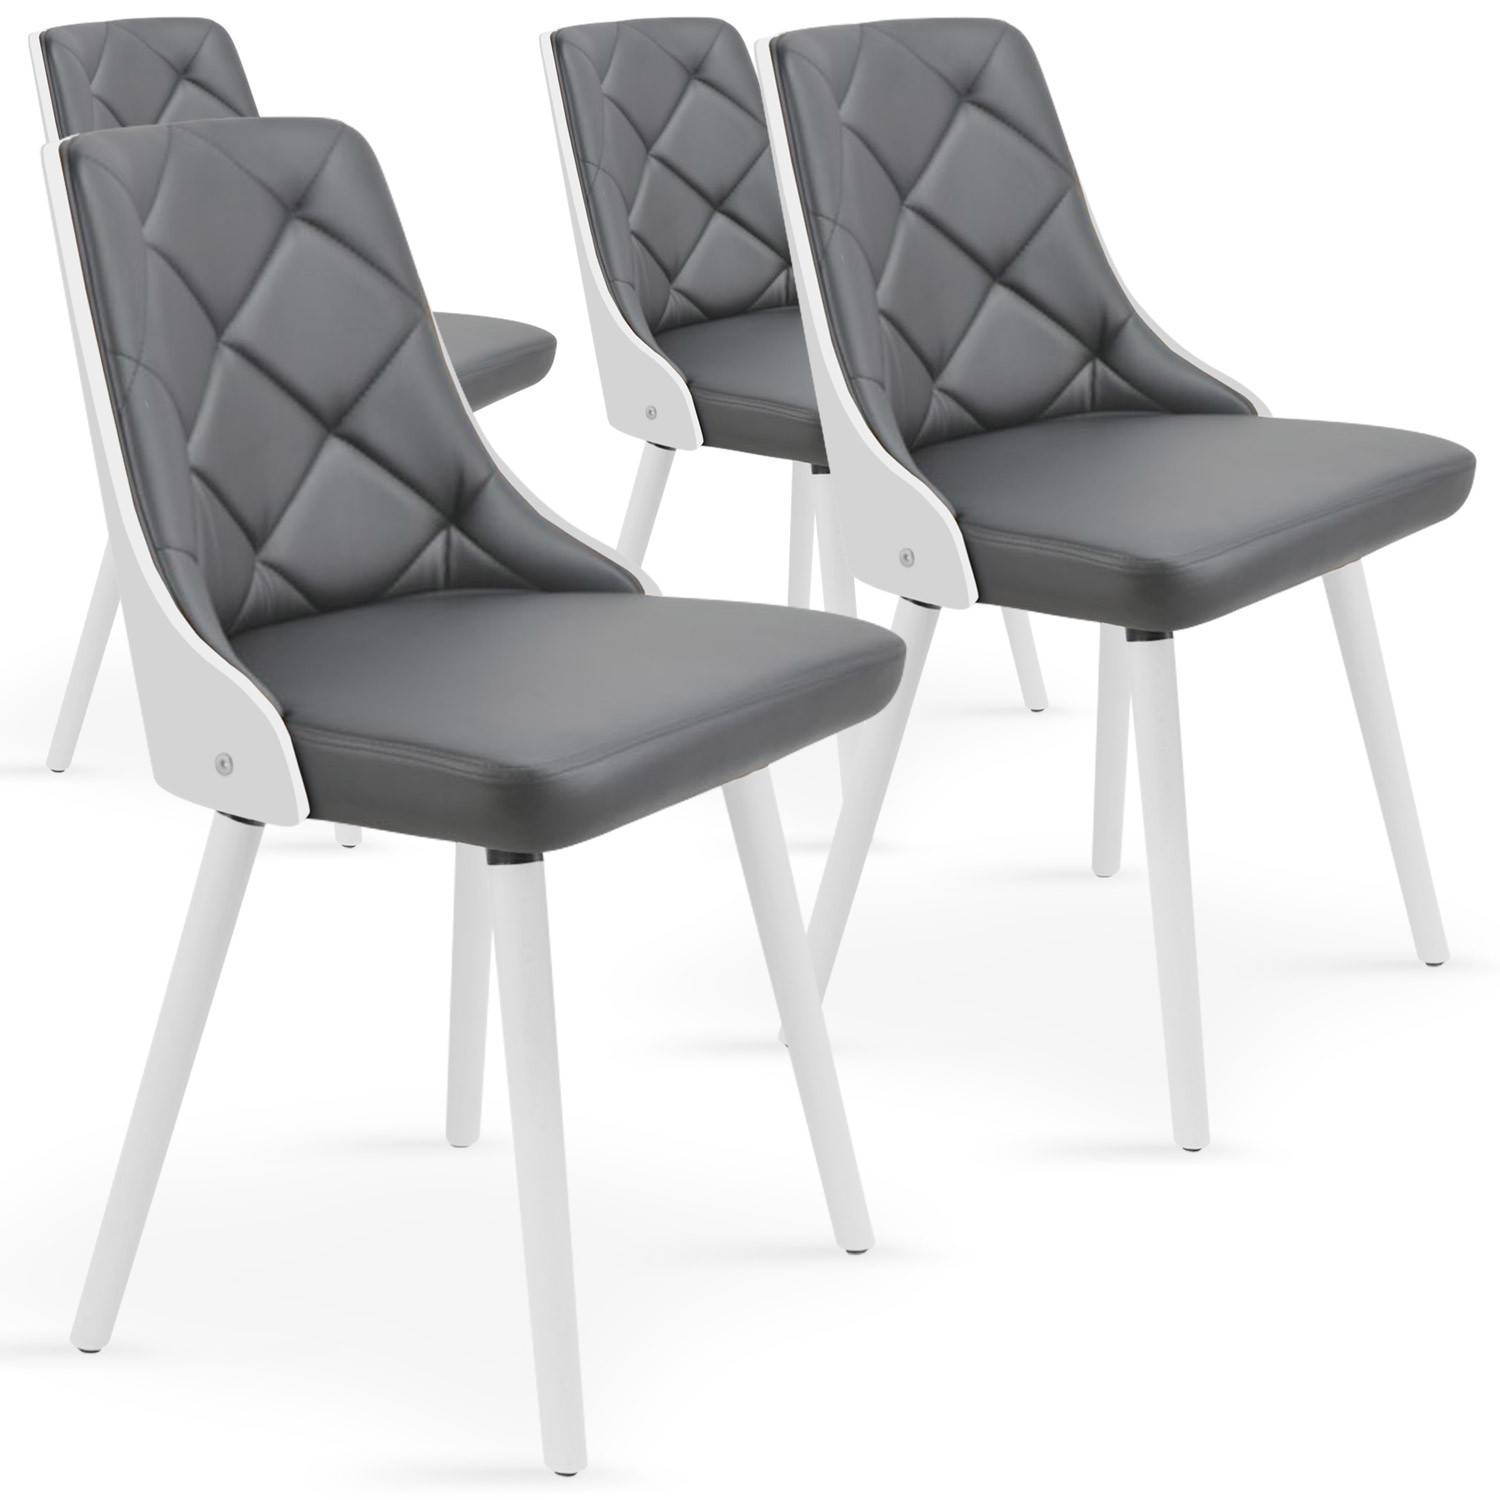 Juego de 4 sillas escandinavas Lalix, blancas y grises